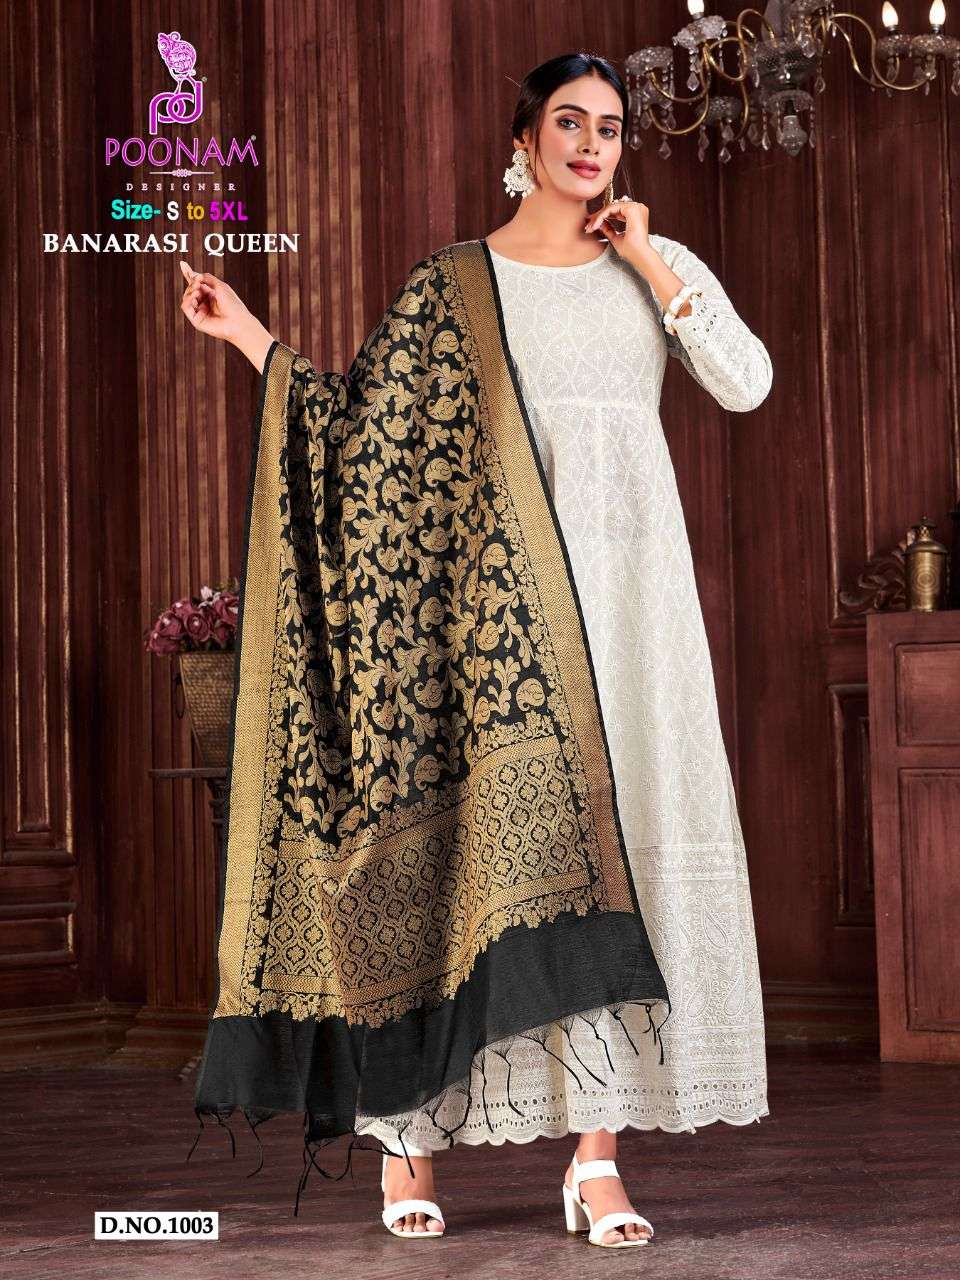 poonam designer banarasi queen series 1001-1006 cotton gown with dupatta 